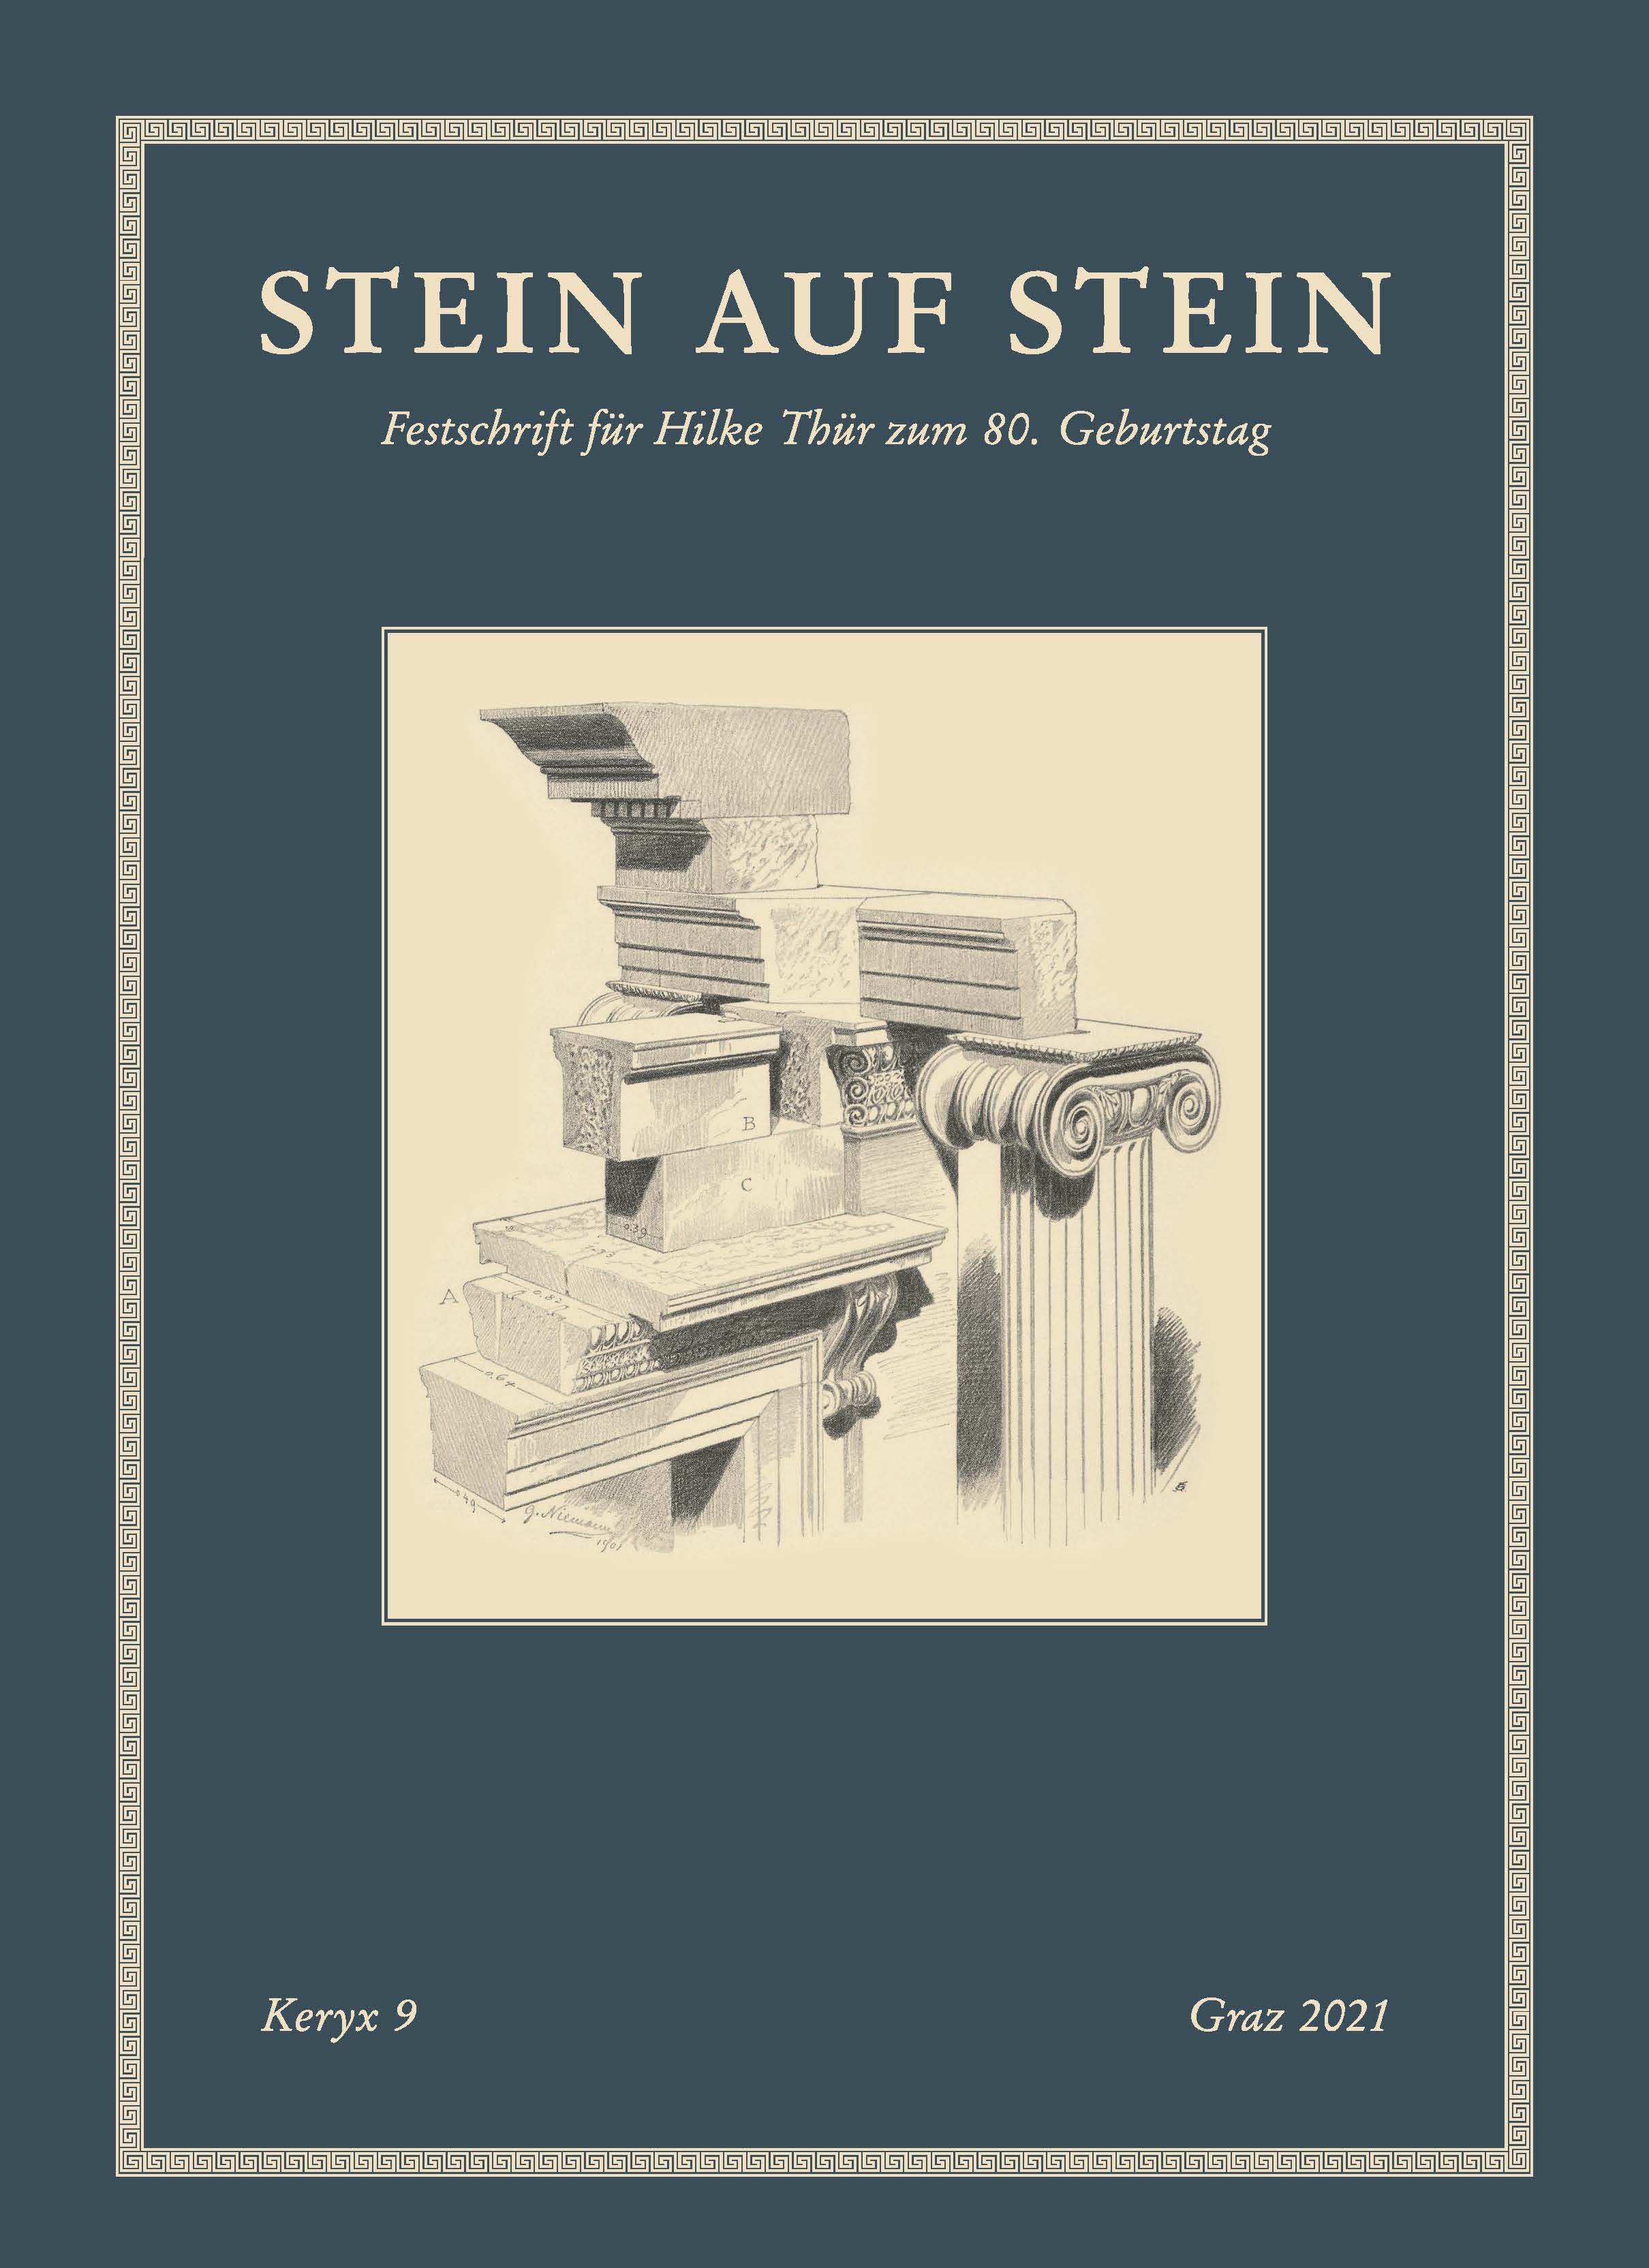 Koller, Karin - Ursula Quatember - Elisabeth Trinkl; Stein auf Stein. Festschrift für Hilke Thür zum 80. Geburtstag